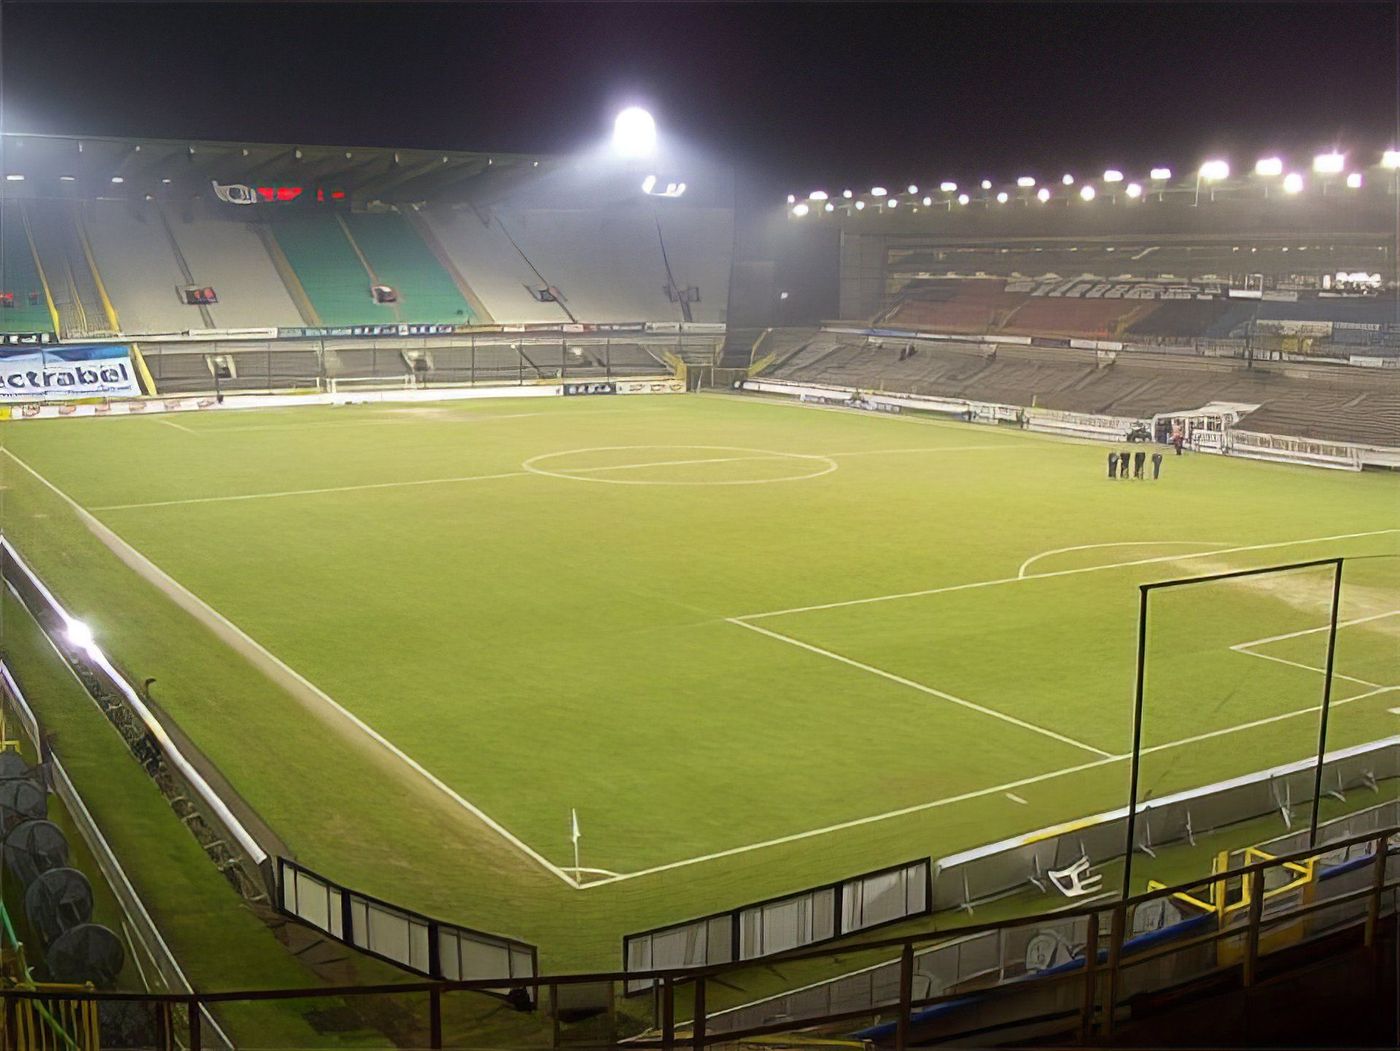 Jan Breydel Stadion (stade Jan Breydel)